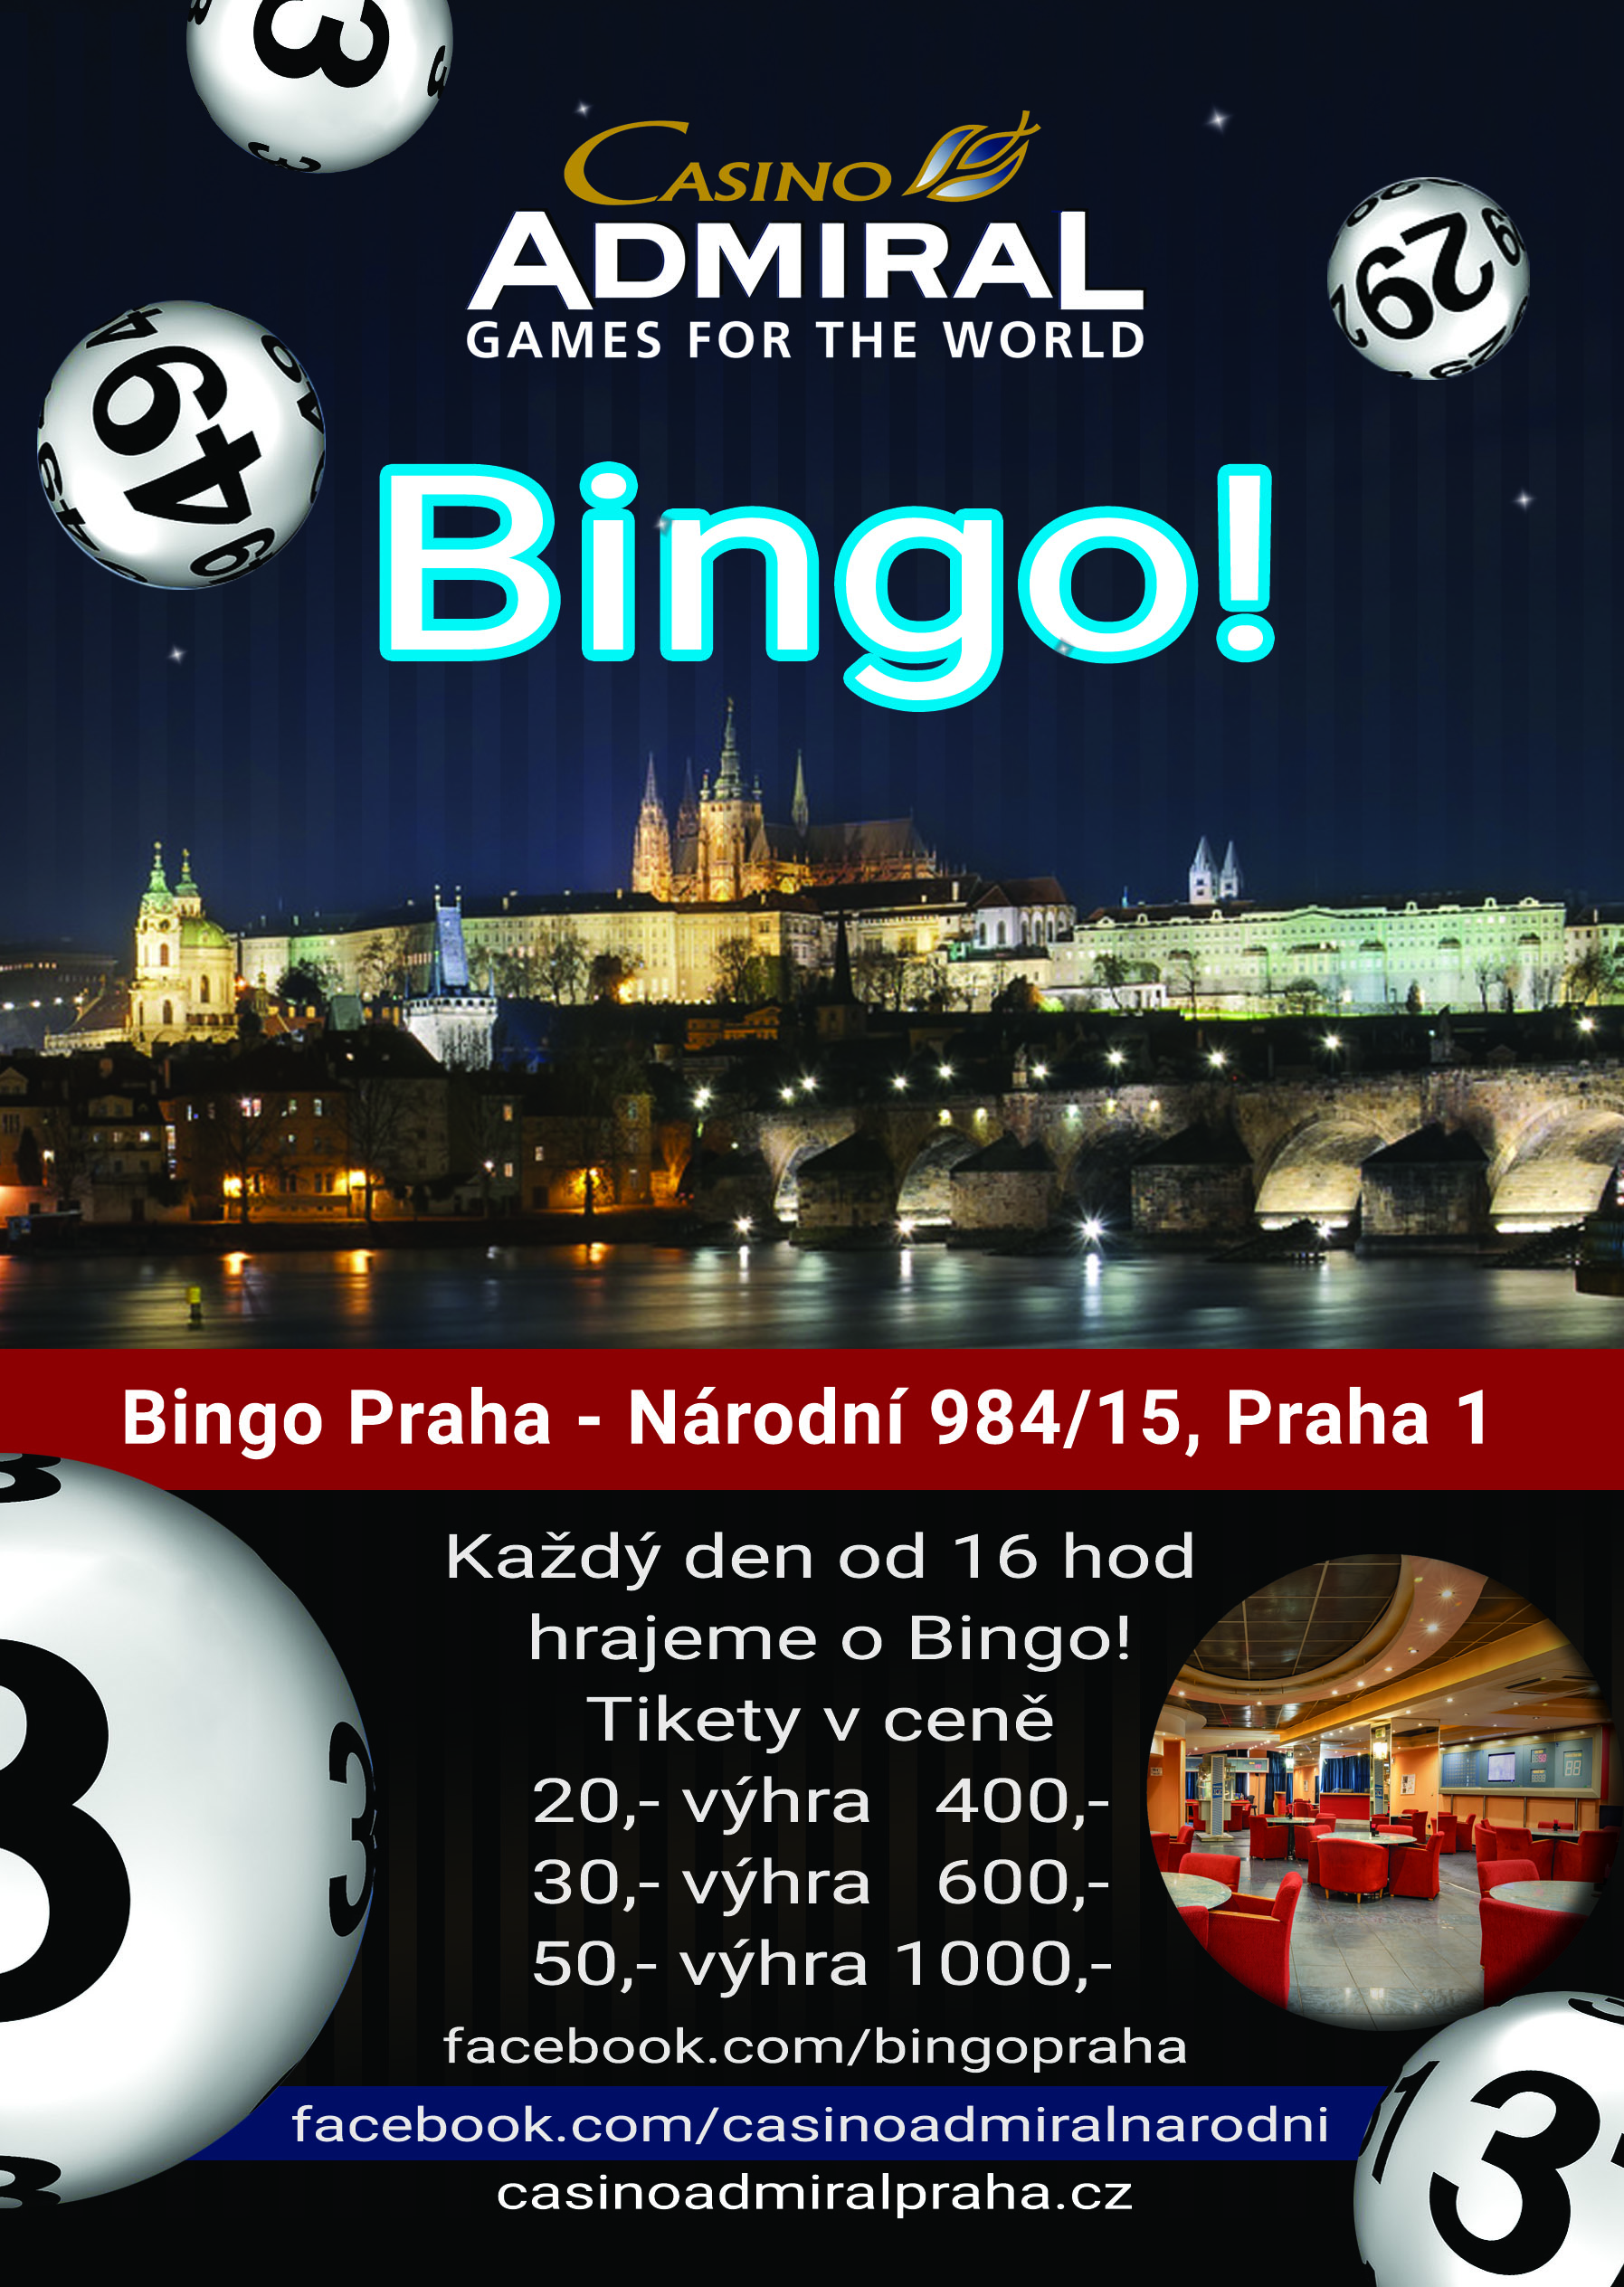 Bingo Prague Cz